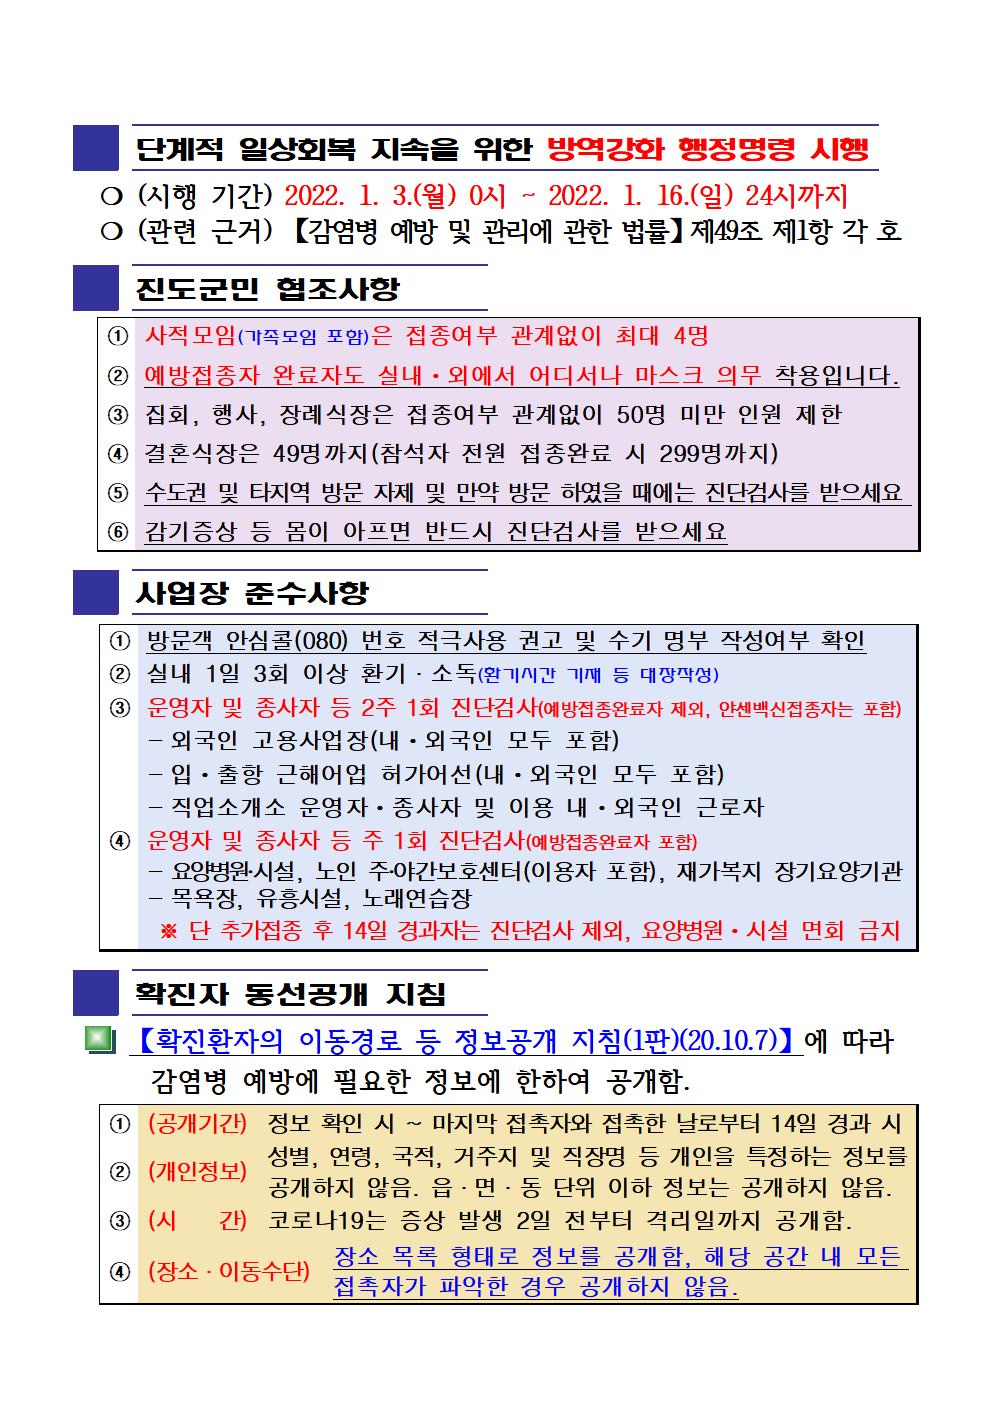 2022년 코로나 19 대응 일일상황보고(1월 10일 24시 기준) 첨부#2